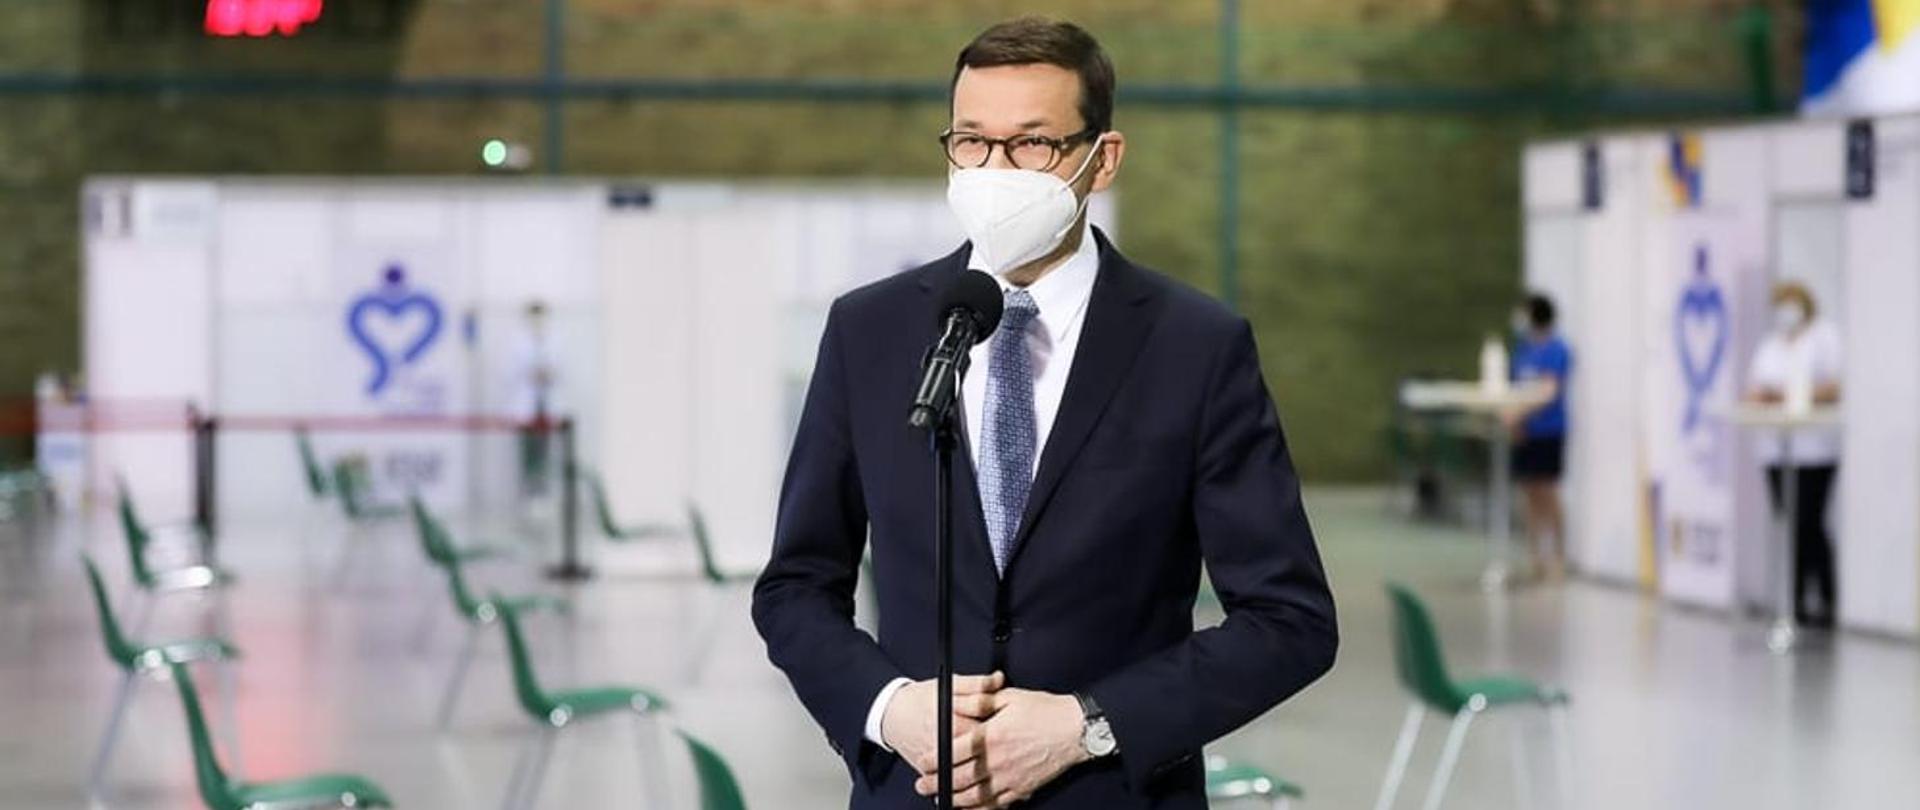 Zdjęcie przedstawia premiera - Mateusza Morawieckiego, który znajduje się tuż przed mikrofonem podczas konferencji dot. koronawirusa SARS-CoV-2.